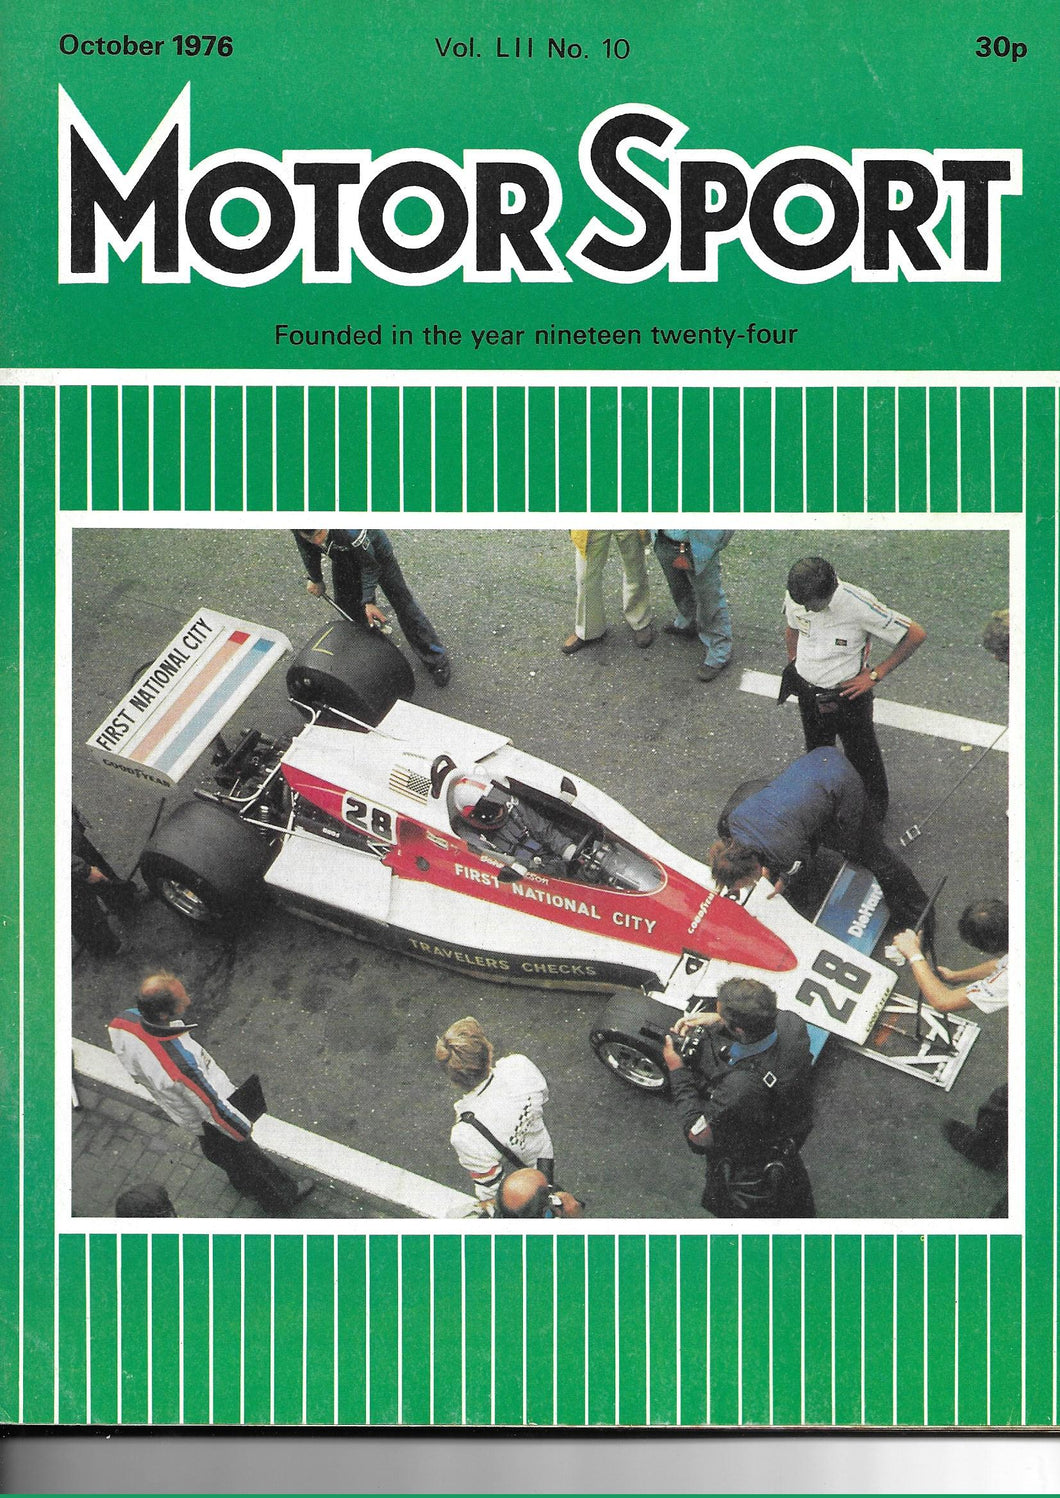 Motor Sport Magazine Vol LII No 10 October 1976